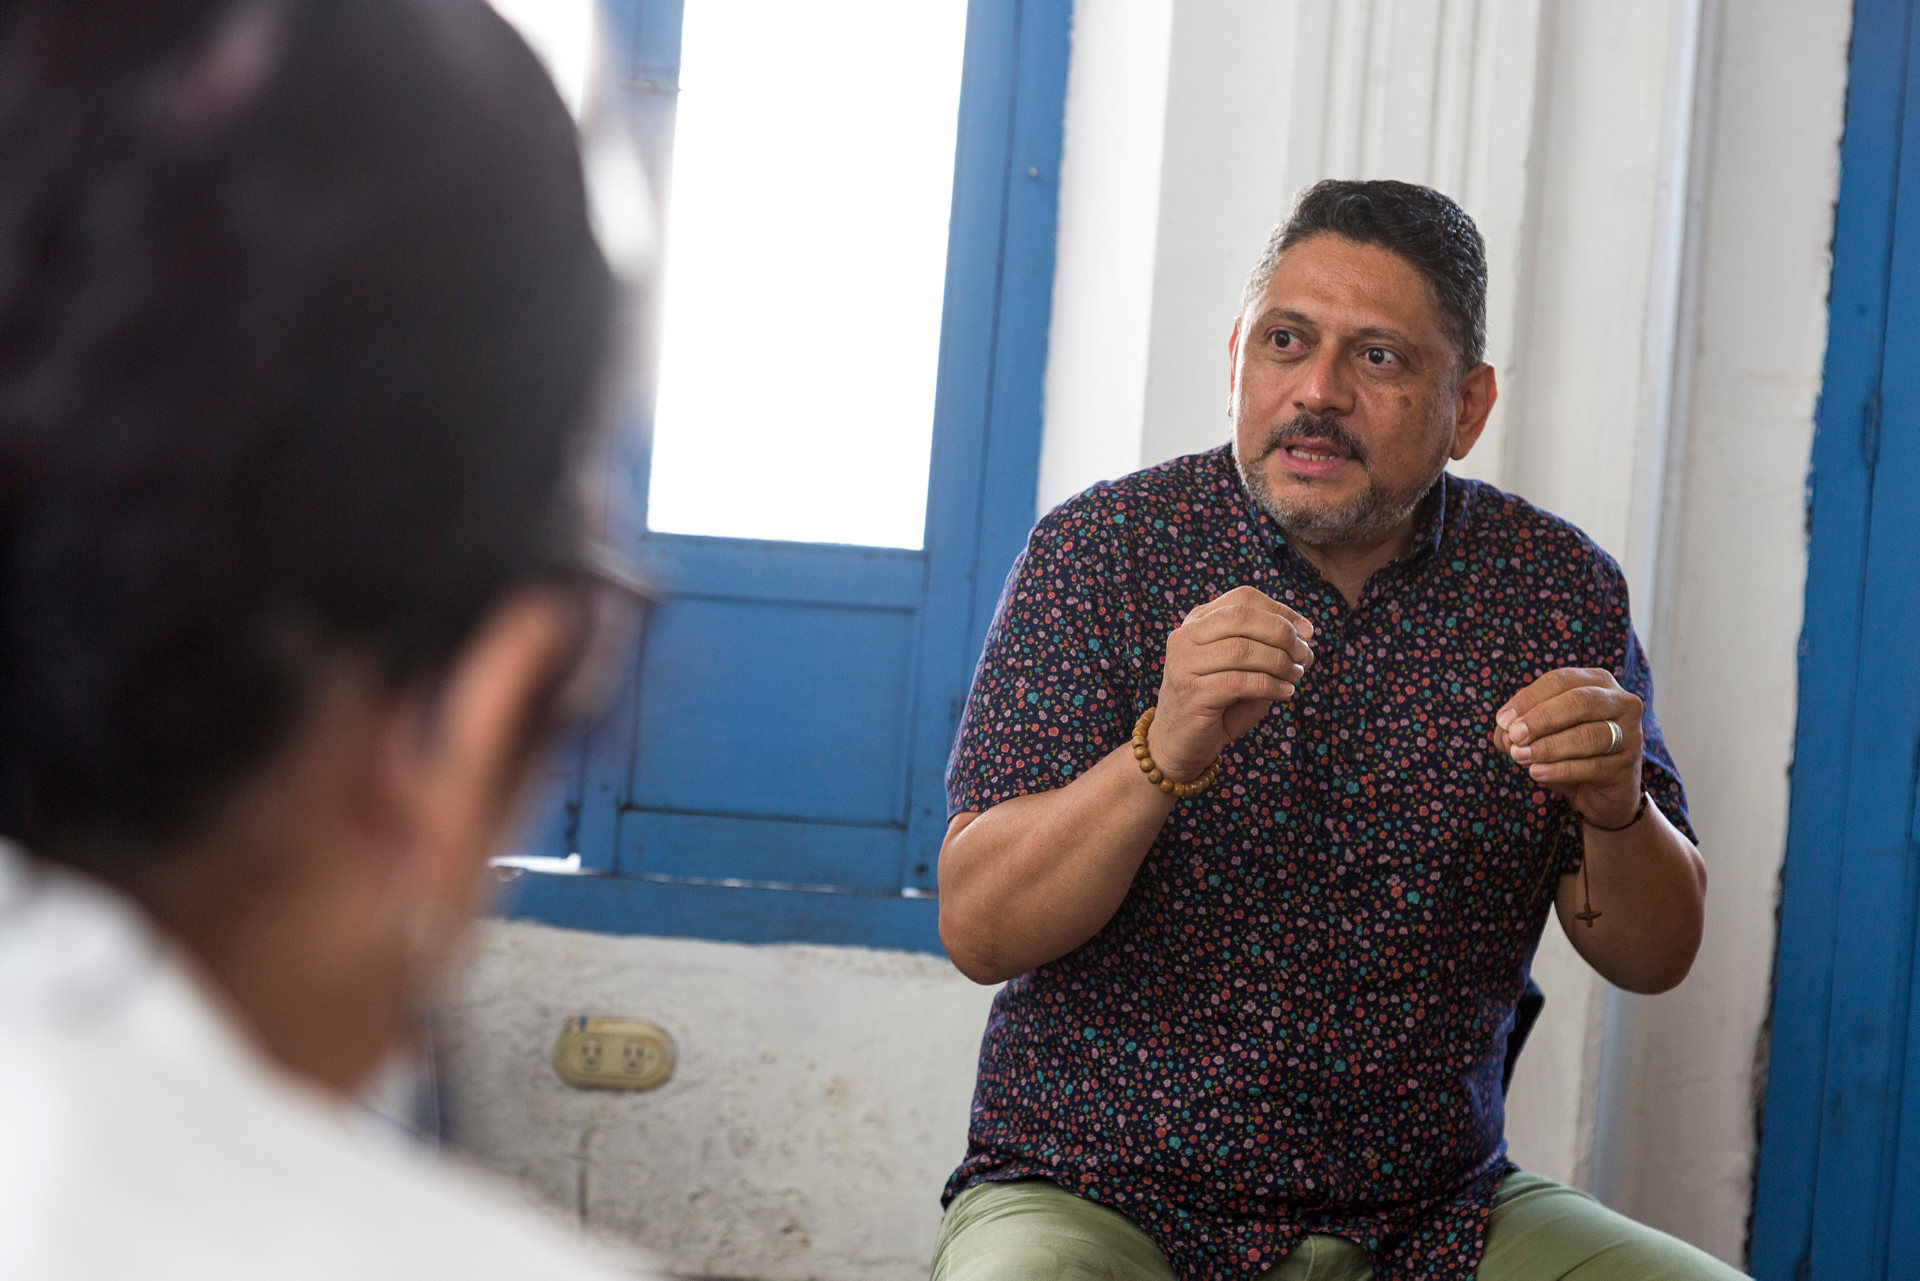 I Centralamerika är det könsbaserade våldet utbrett och kvinnor utnyttjas många gånger i männens maktspel. Larry Madrigal leder samtalsgrupper för kvinnor och män där man diskuterar destruktiva könsroller och vad man kan göra för att motverka våld i samhället. 